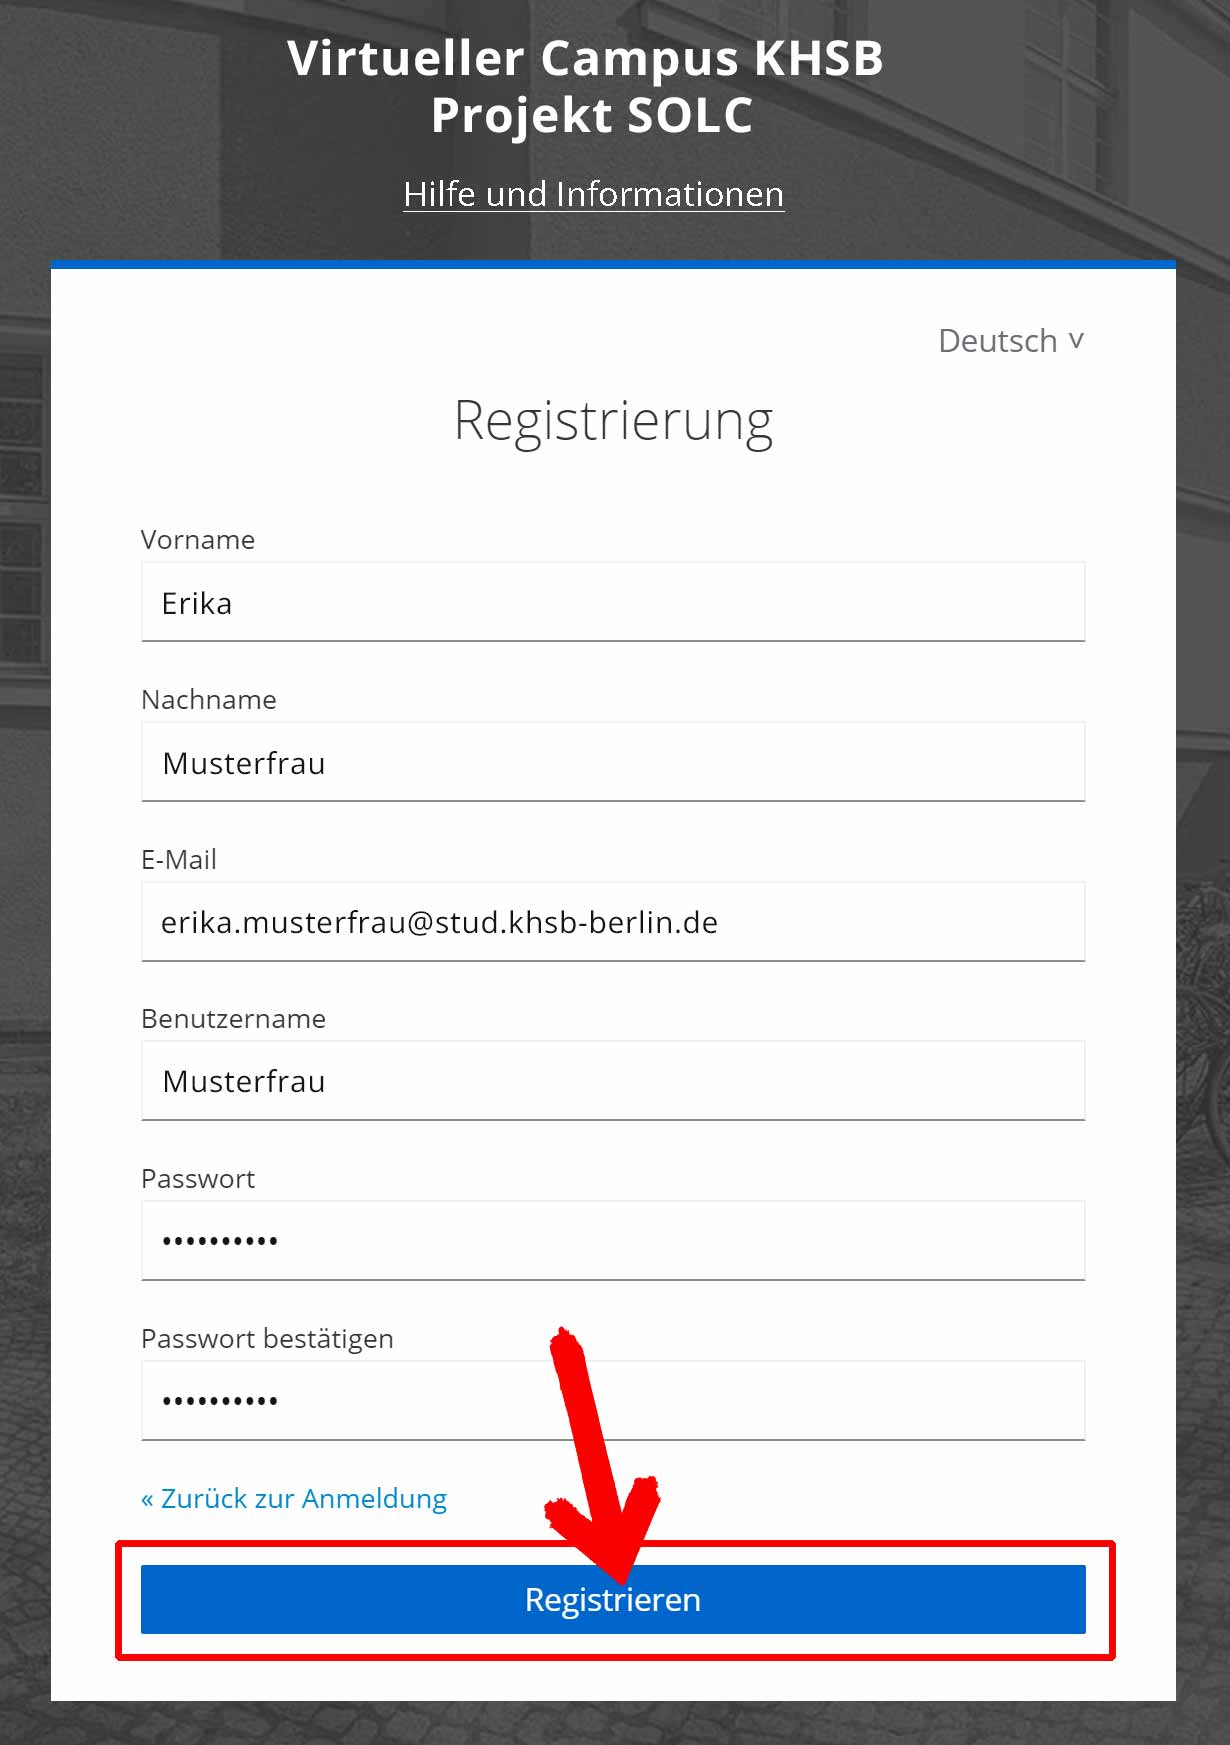  Registrierungsseite mit Beispieldaten des VC auf visit.solc-khsb.de Registrierungsseite mit Beispieldaten des VC auf visit.solc-khsb.de 